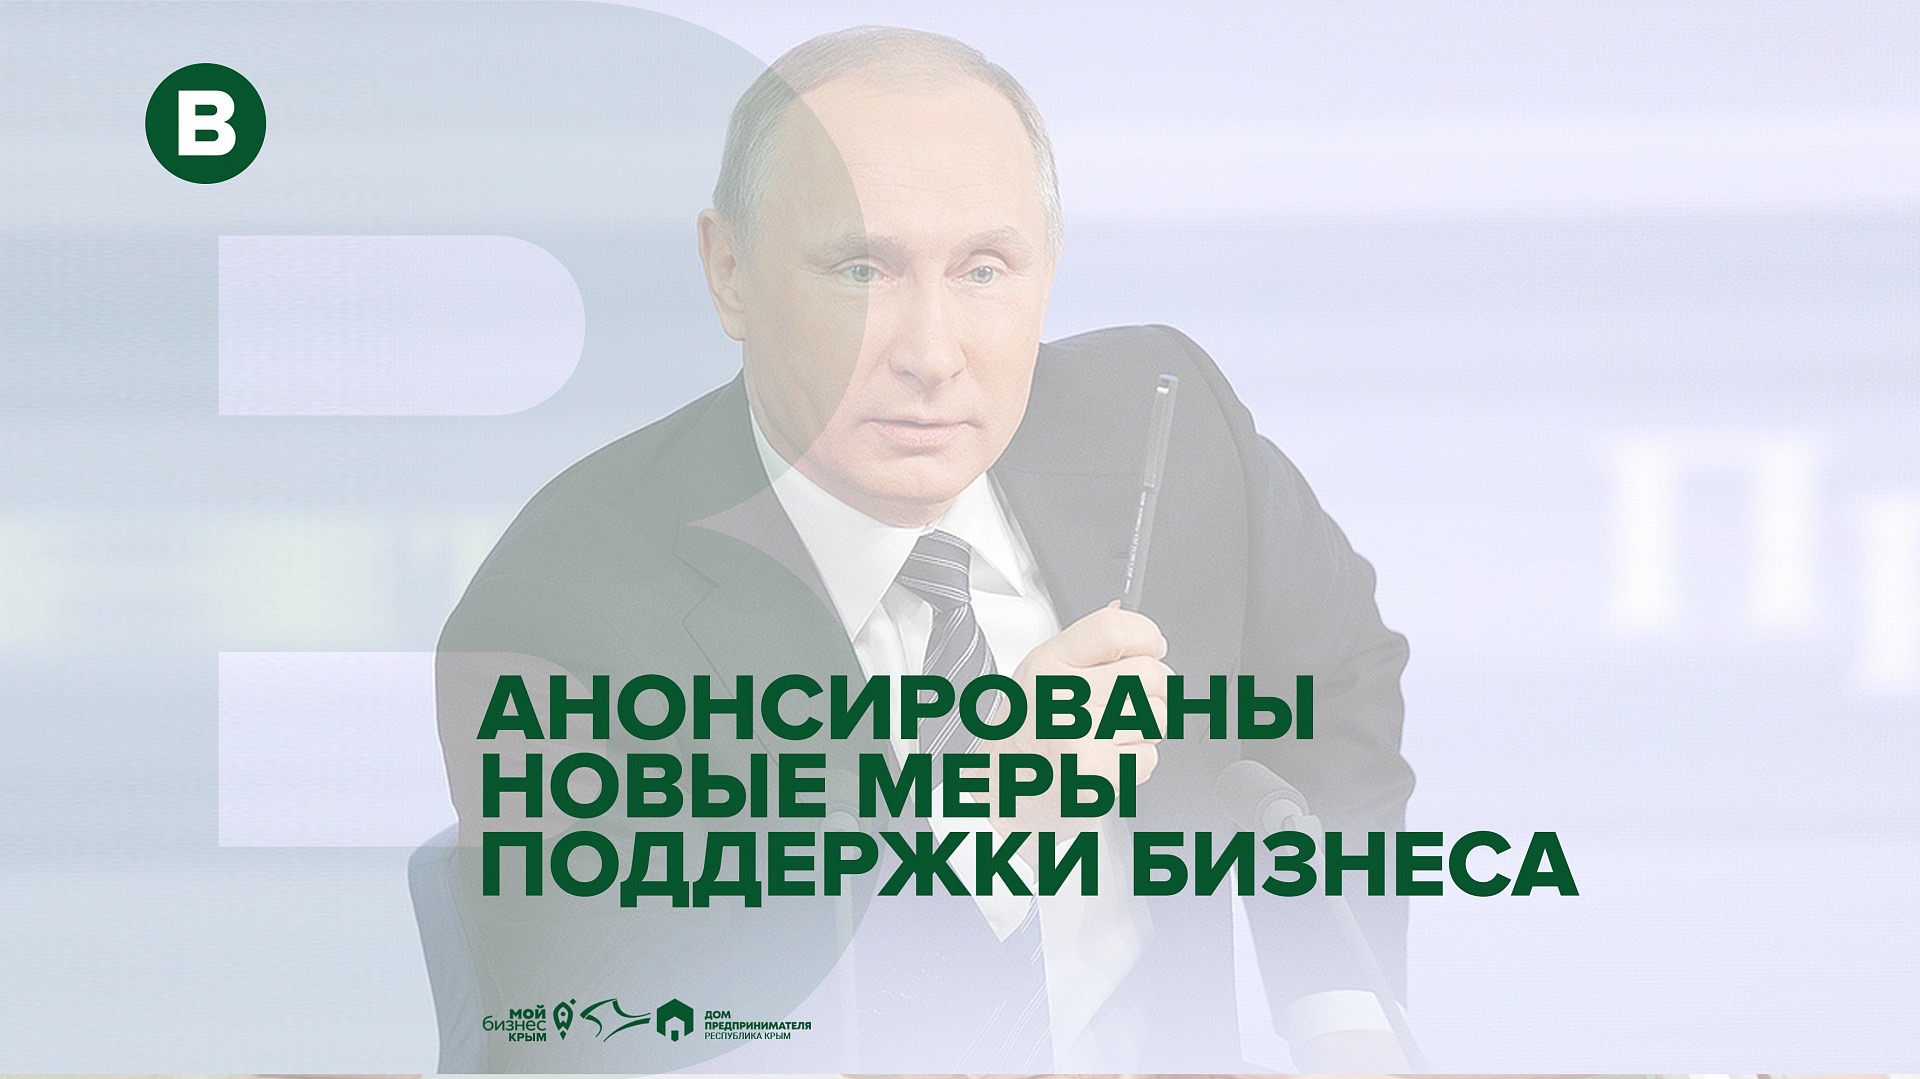 Владимир Путин перед совещанием с членами кабмина по вопросу ситуации с коронавирусом анонсировал новые меры поддержки бизнеса